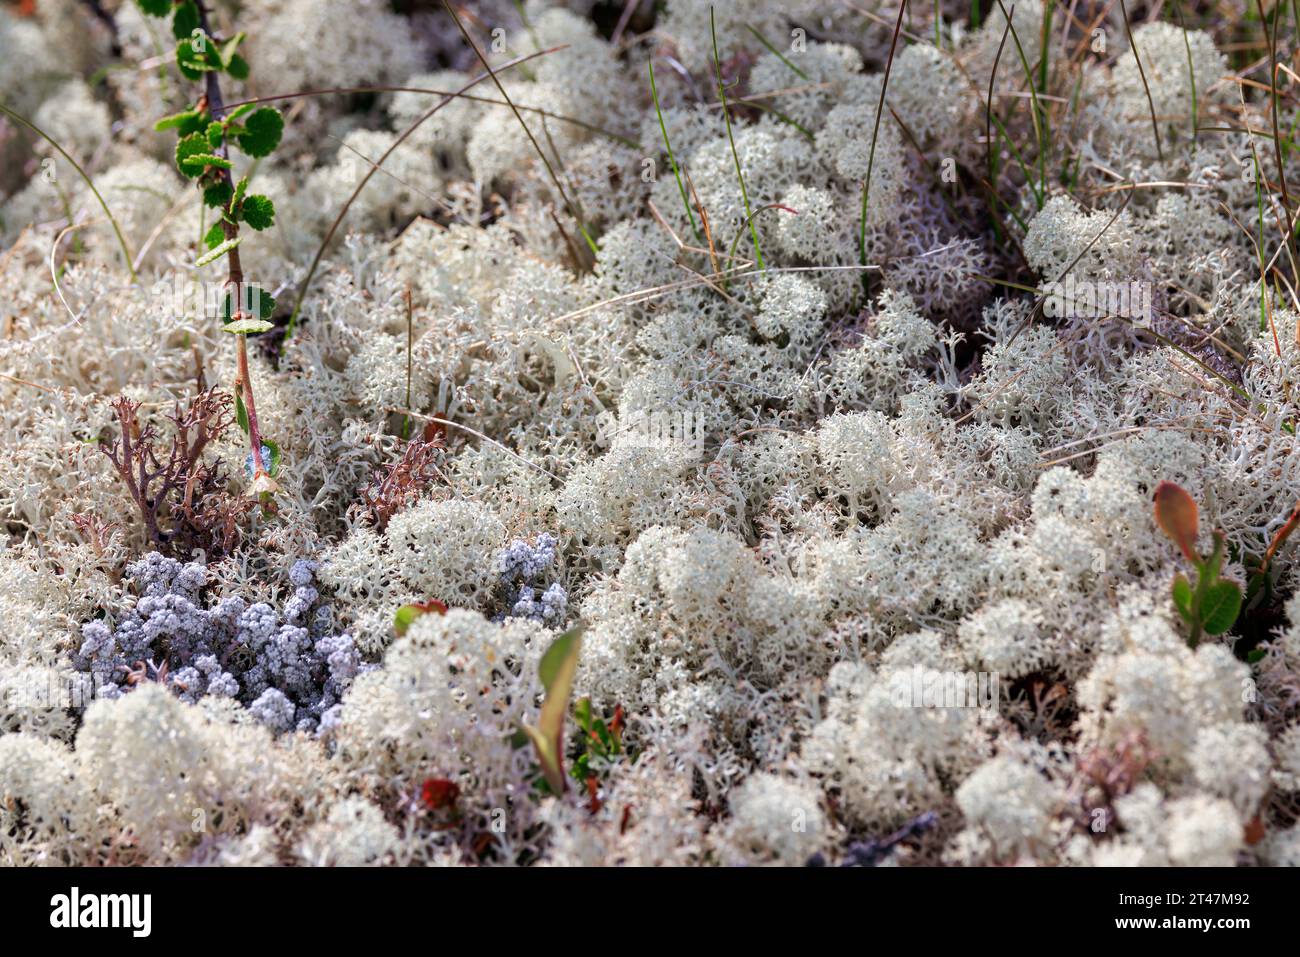 Vue rapprochée de la mousse de lichen de la toundra arctique. Trouvé principalement dans les zones de toundra arctique, toundra alpine, il est extrêmement résistant au froid. Cladonia rangiferina, aussi k Banque D'Images